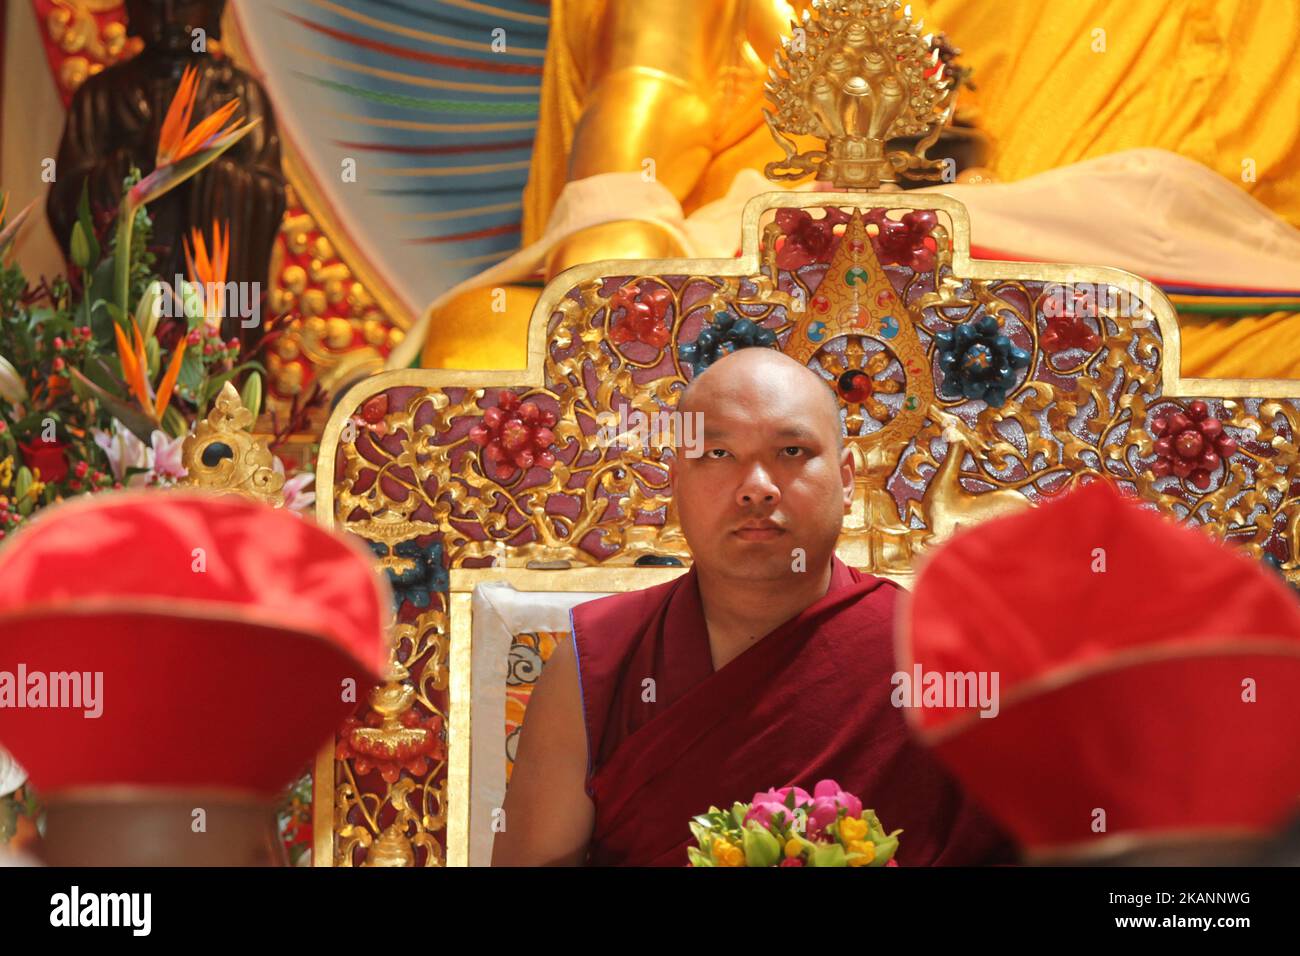 Seine Heiligkeit der 17. Gyalwang Karmapa Ogyen Trinley Dorje besuchte das Karma Tekchen Zabsal Ling Toronto Thrangu Centre, um das Band zu schneiden und das Zentrum während der Eröffnungszeremonie für den neu errichteten Hauptgebetssaal am 8. Juni 2017 in Aurora, Ontario, Kanada, zu segnen. Bei seinem ersten Besuch in Kanada. Wie der Dalai Lama ist auch der Karmapa Lama aus Tibet geflohen und lebt nun in Indien. Er könnte der nächste Dalai Lama sein und einer der mächtigsten spirituellen und politischen Führer der Welt werden. (Foto by Creative Touch Imaging Ltd./NurPhoto) *** Bitte nutzen Sie die Gutschrift aus dem Kreditfeld *** Stockfoto